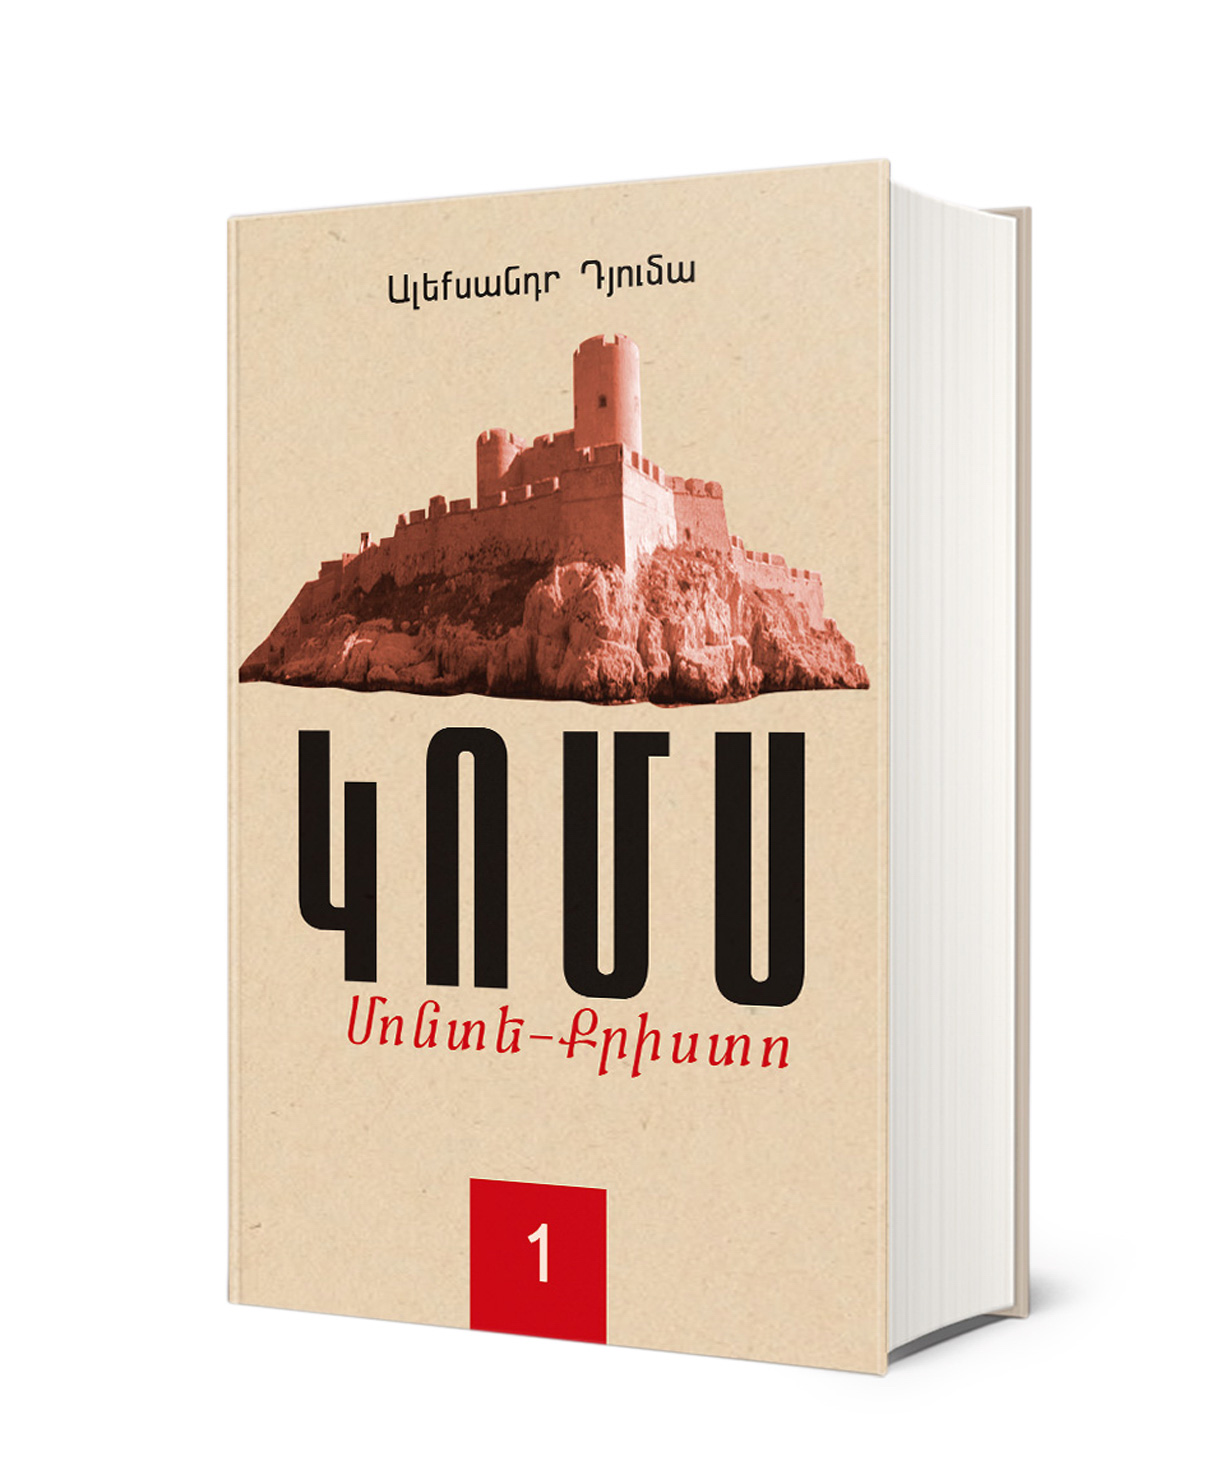 Գիրք «Կոմս Մոնտե-Քրիստո. գիրք 1»  Ալեքսանդր Դյումա / հայերեն